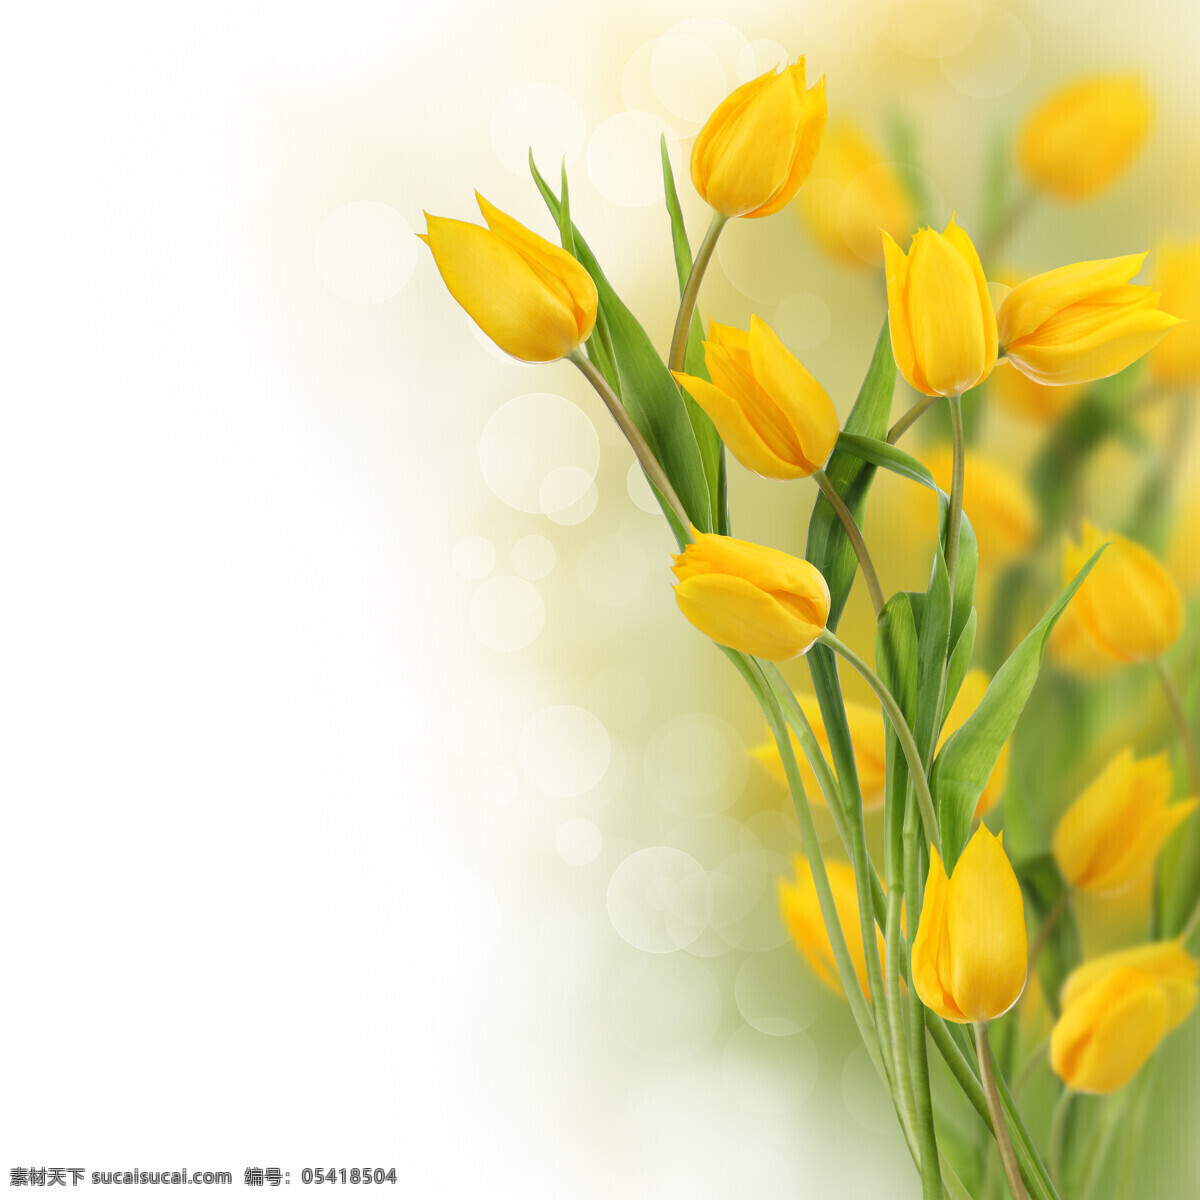 黄色 郁金香 鲜花 美丽鲜花 黄色花朵 花卉 鲜花背景 花草树木 生物世界